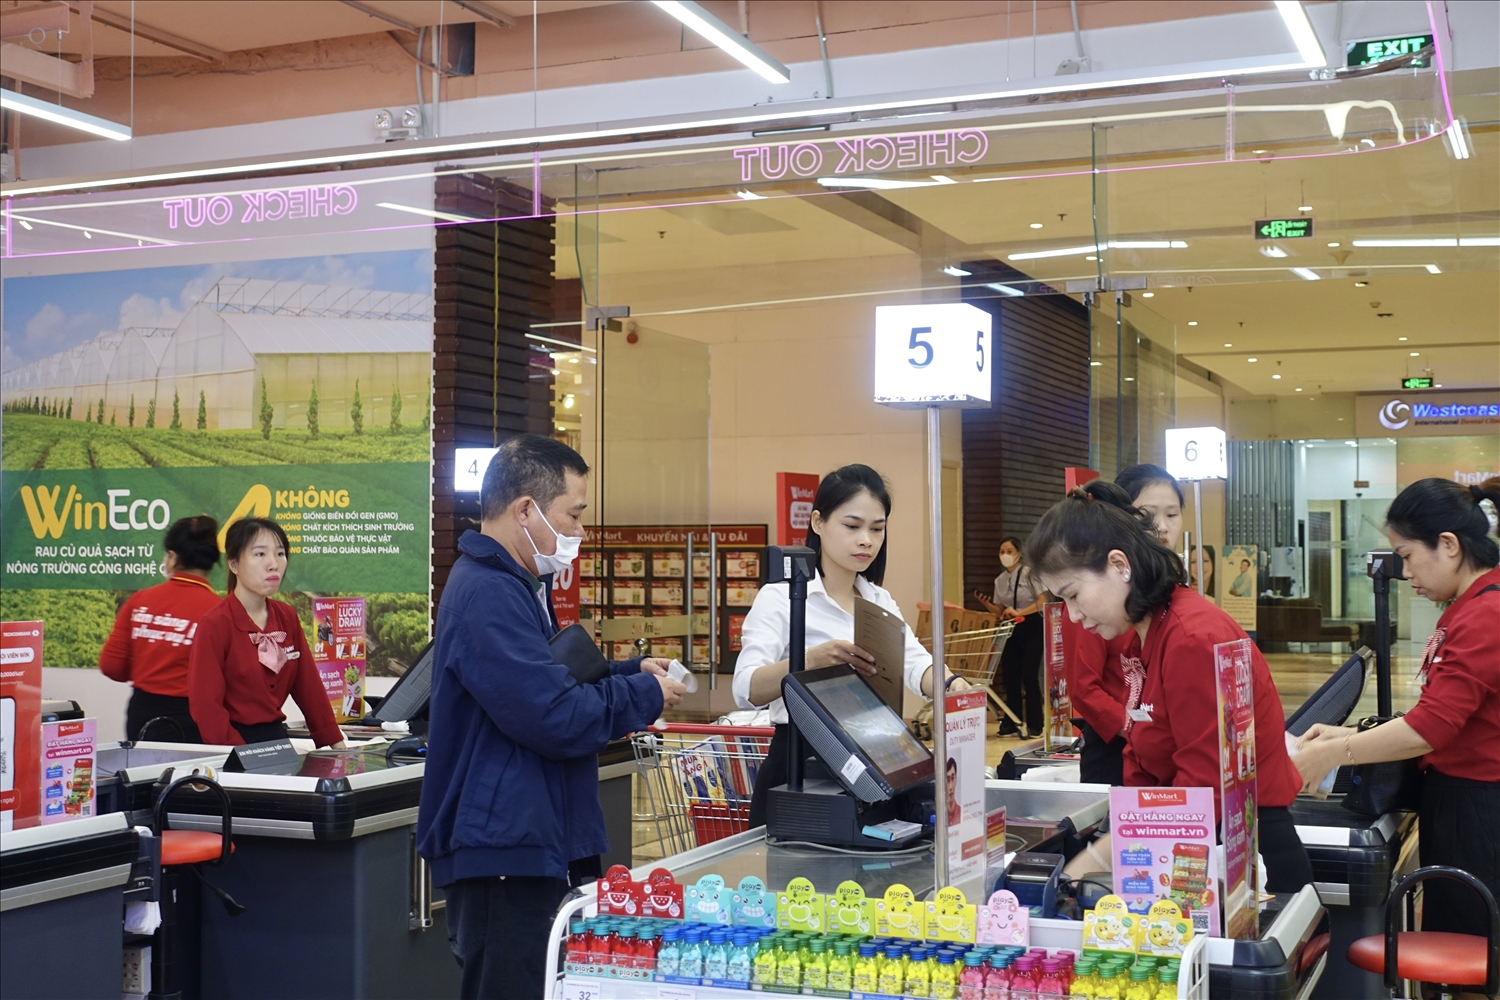 (Tin) Đón mùa mua sắm cuối năm, WinCommerce nâng cấp loạt siêu thị mới 9